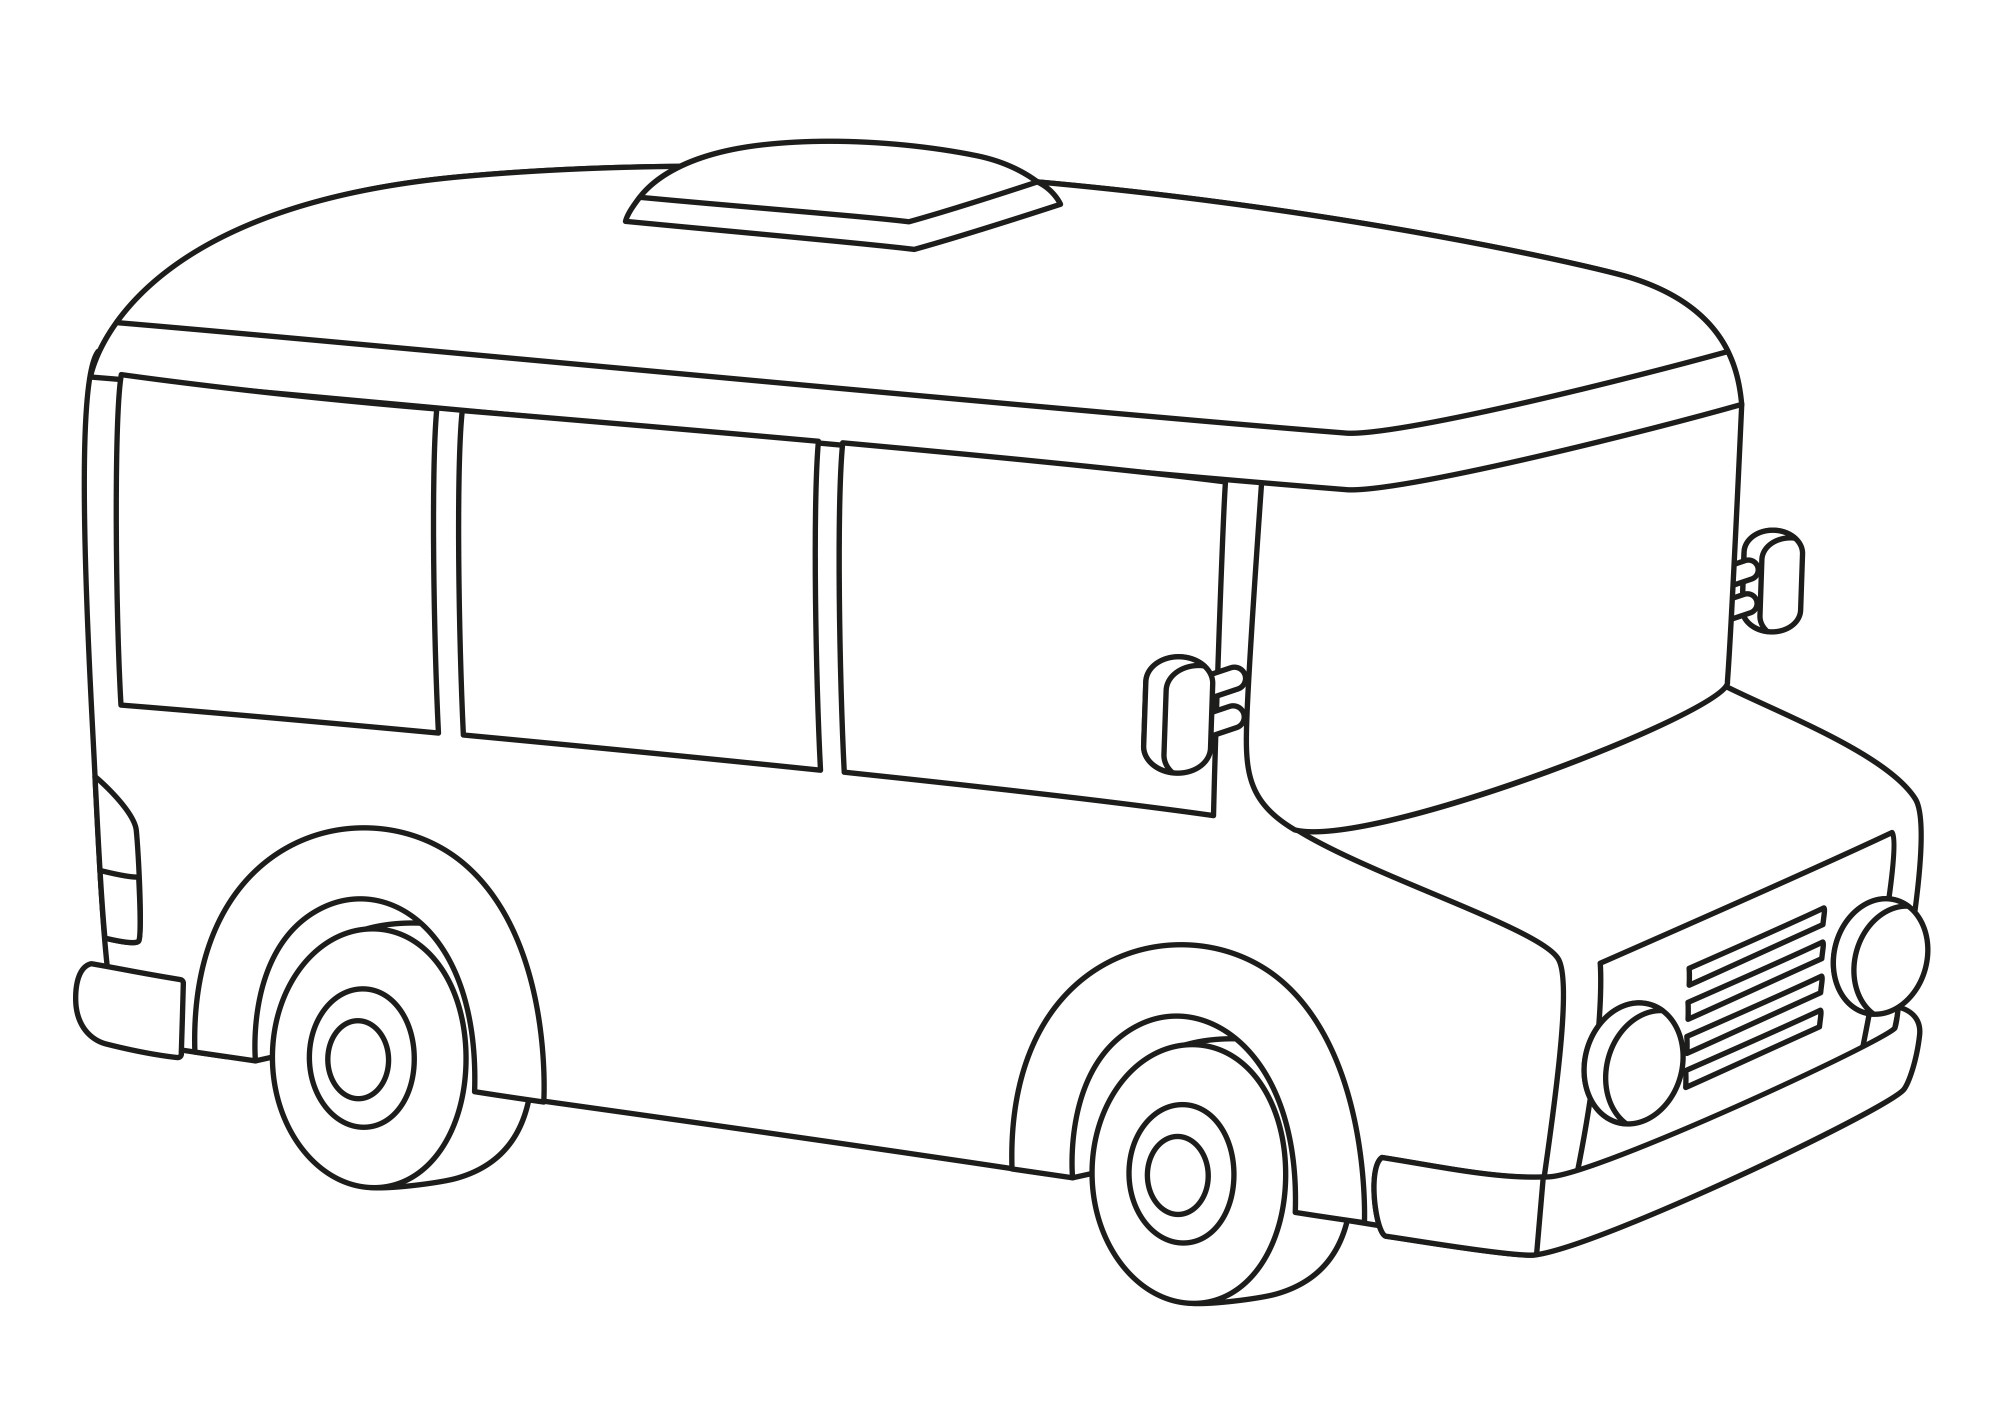 Раскраска для детей: простой контур автобуса